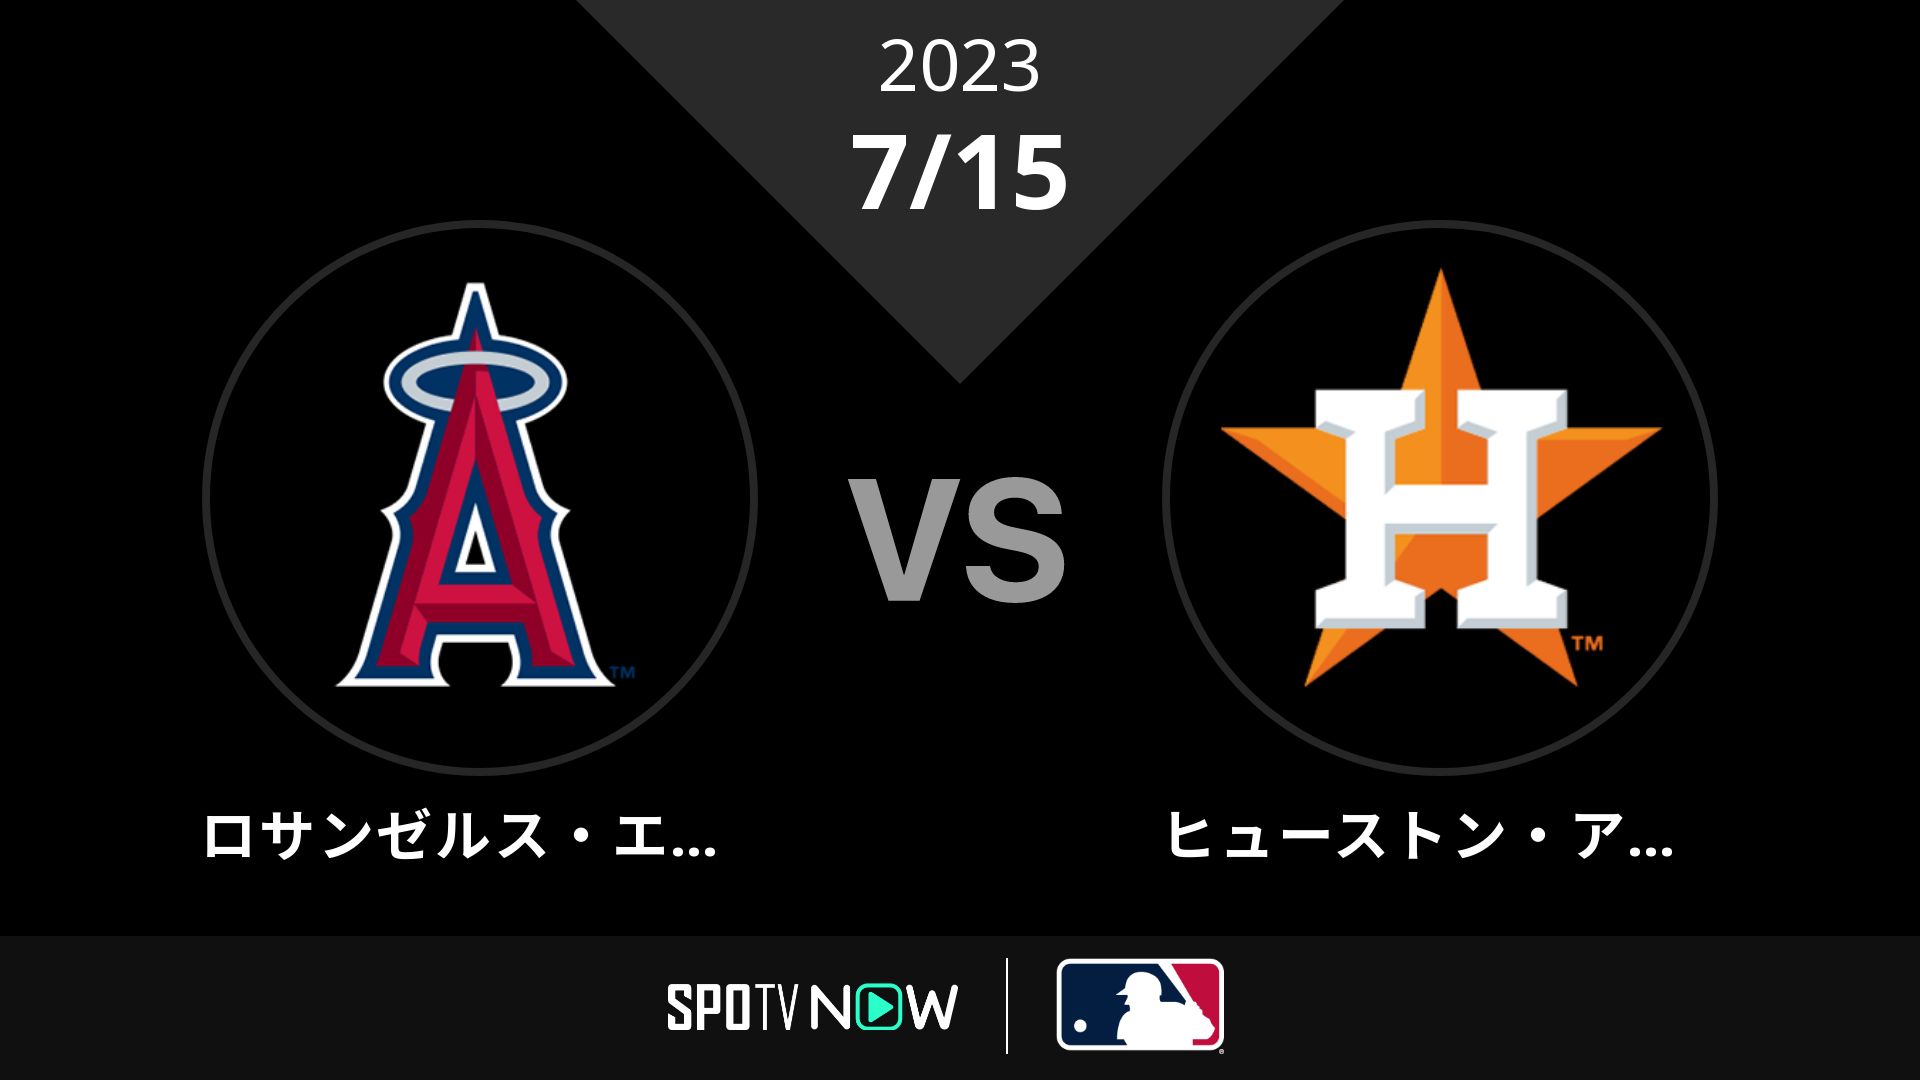 2023/7/15 エンゼルス vs アストロズ [MLB]